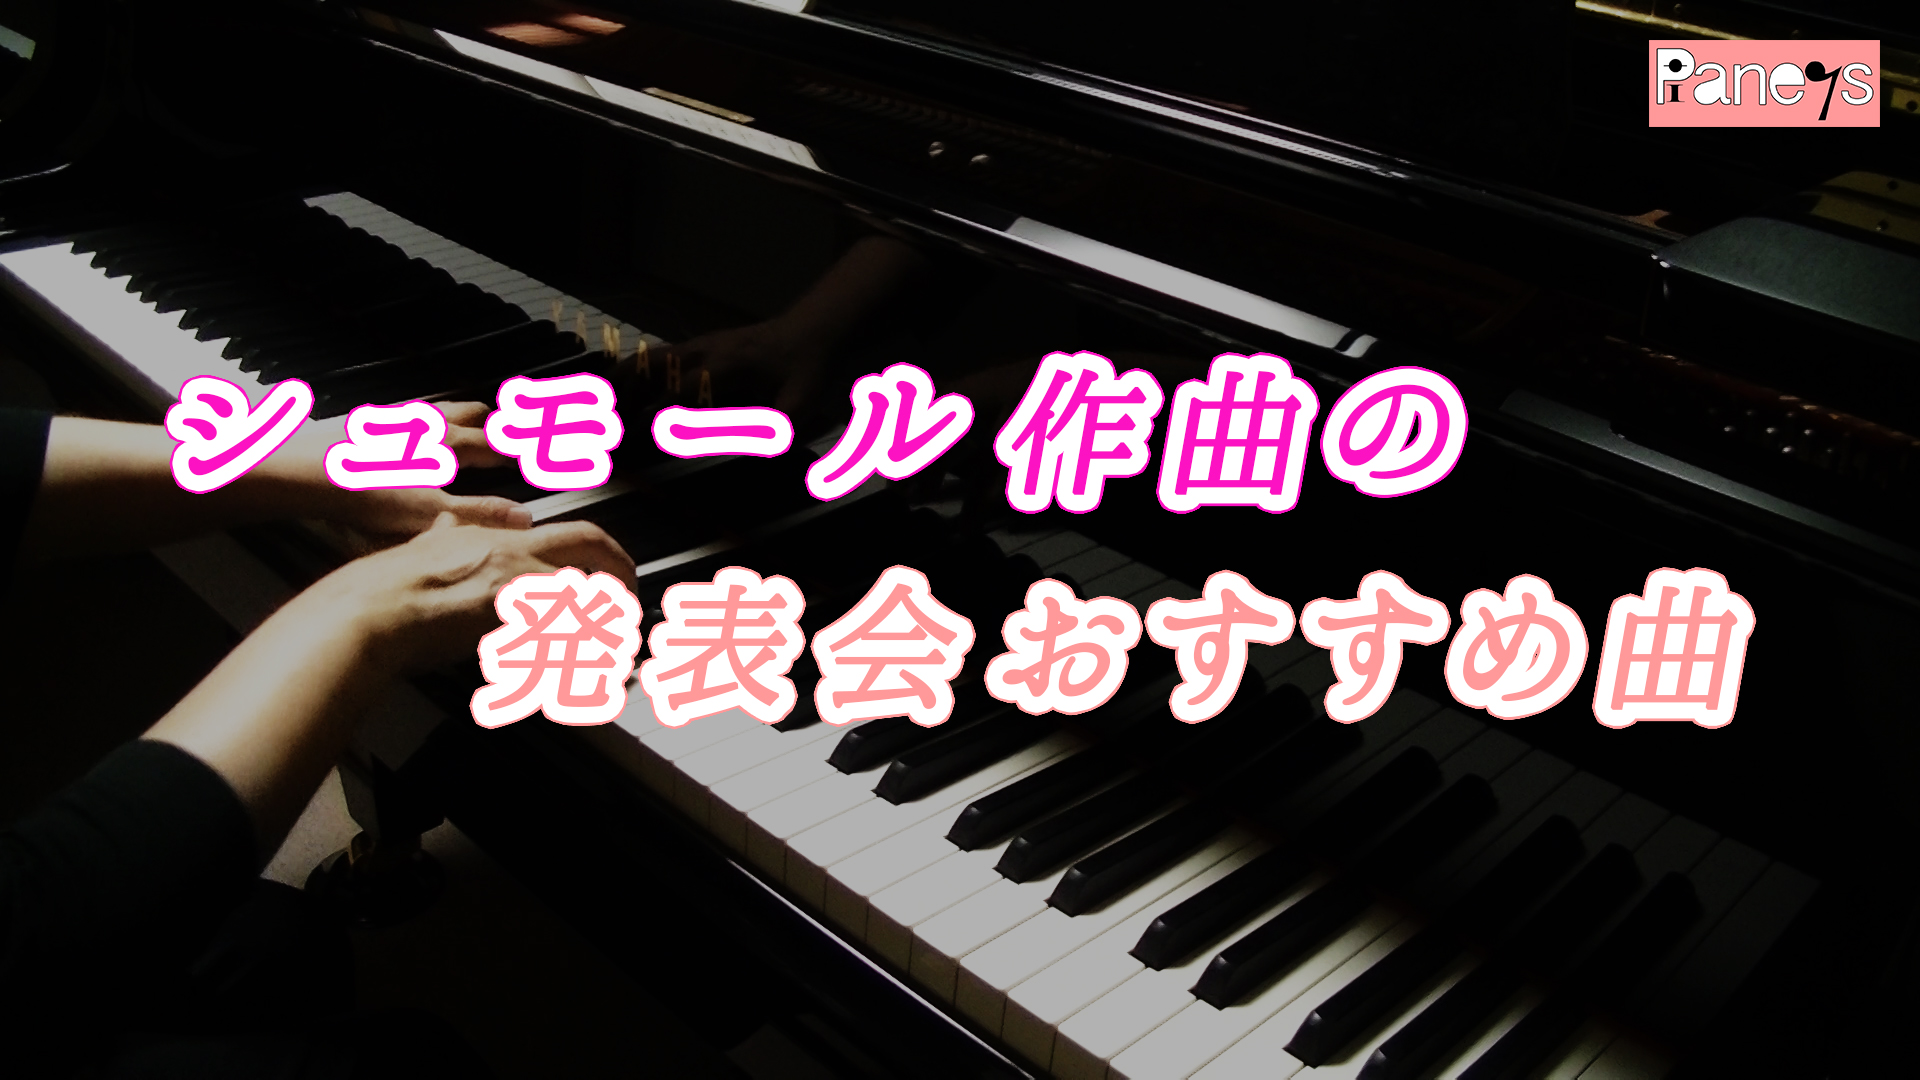 シュモール作曲の発表会おすすめ曲 動画で選べる ピアノ発表会おすすめ曲